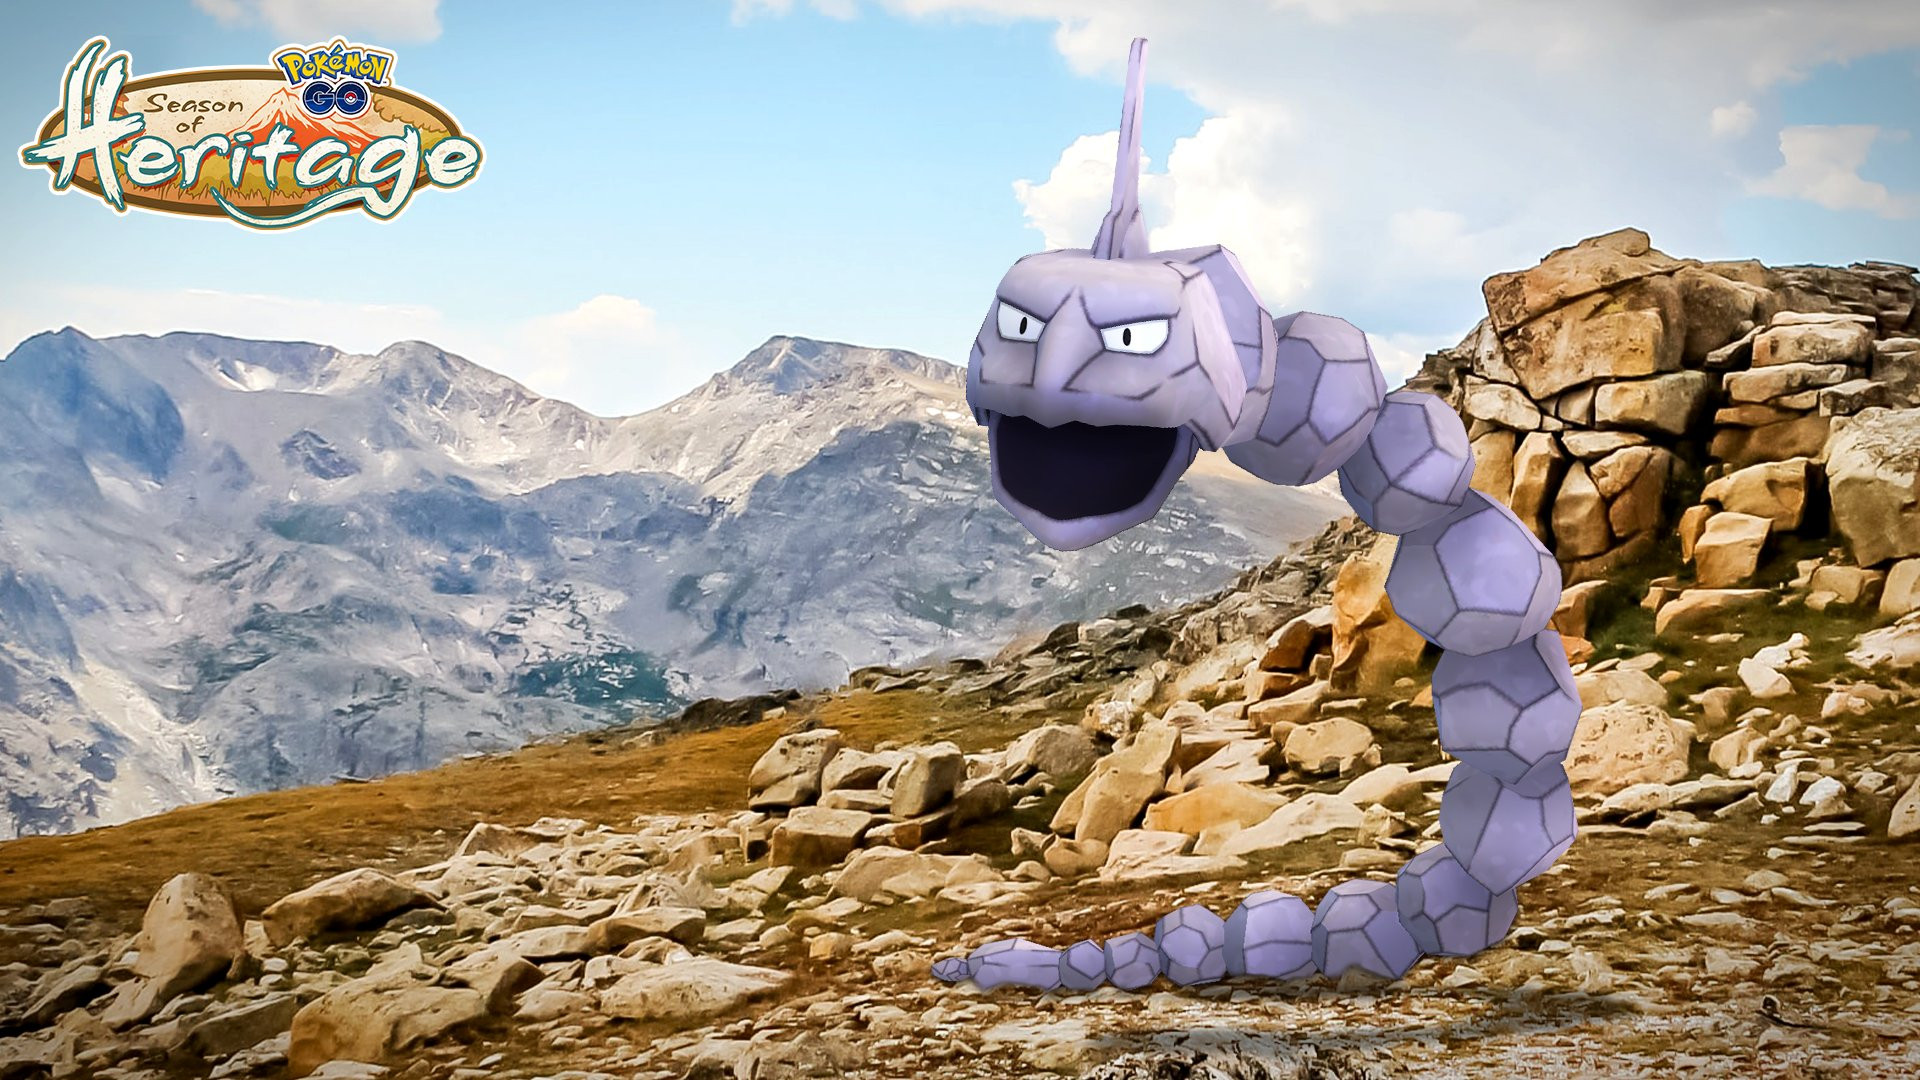 Montagnes de Puissance, étude ponctuelle sur Pokémon Go